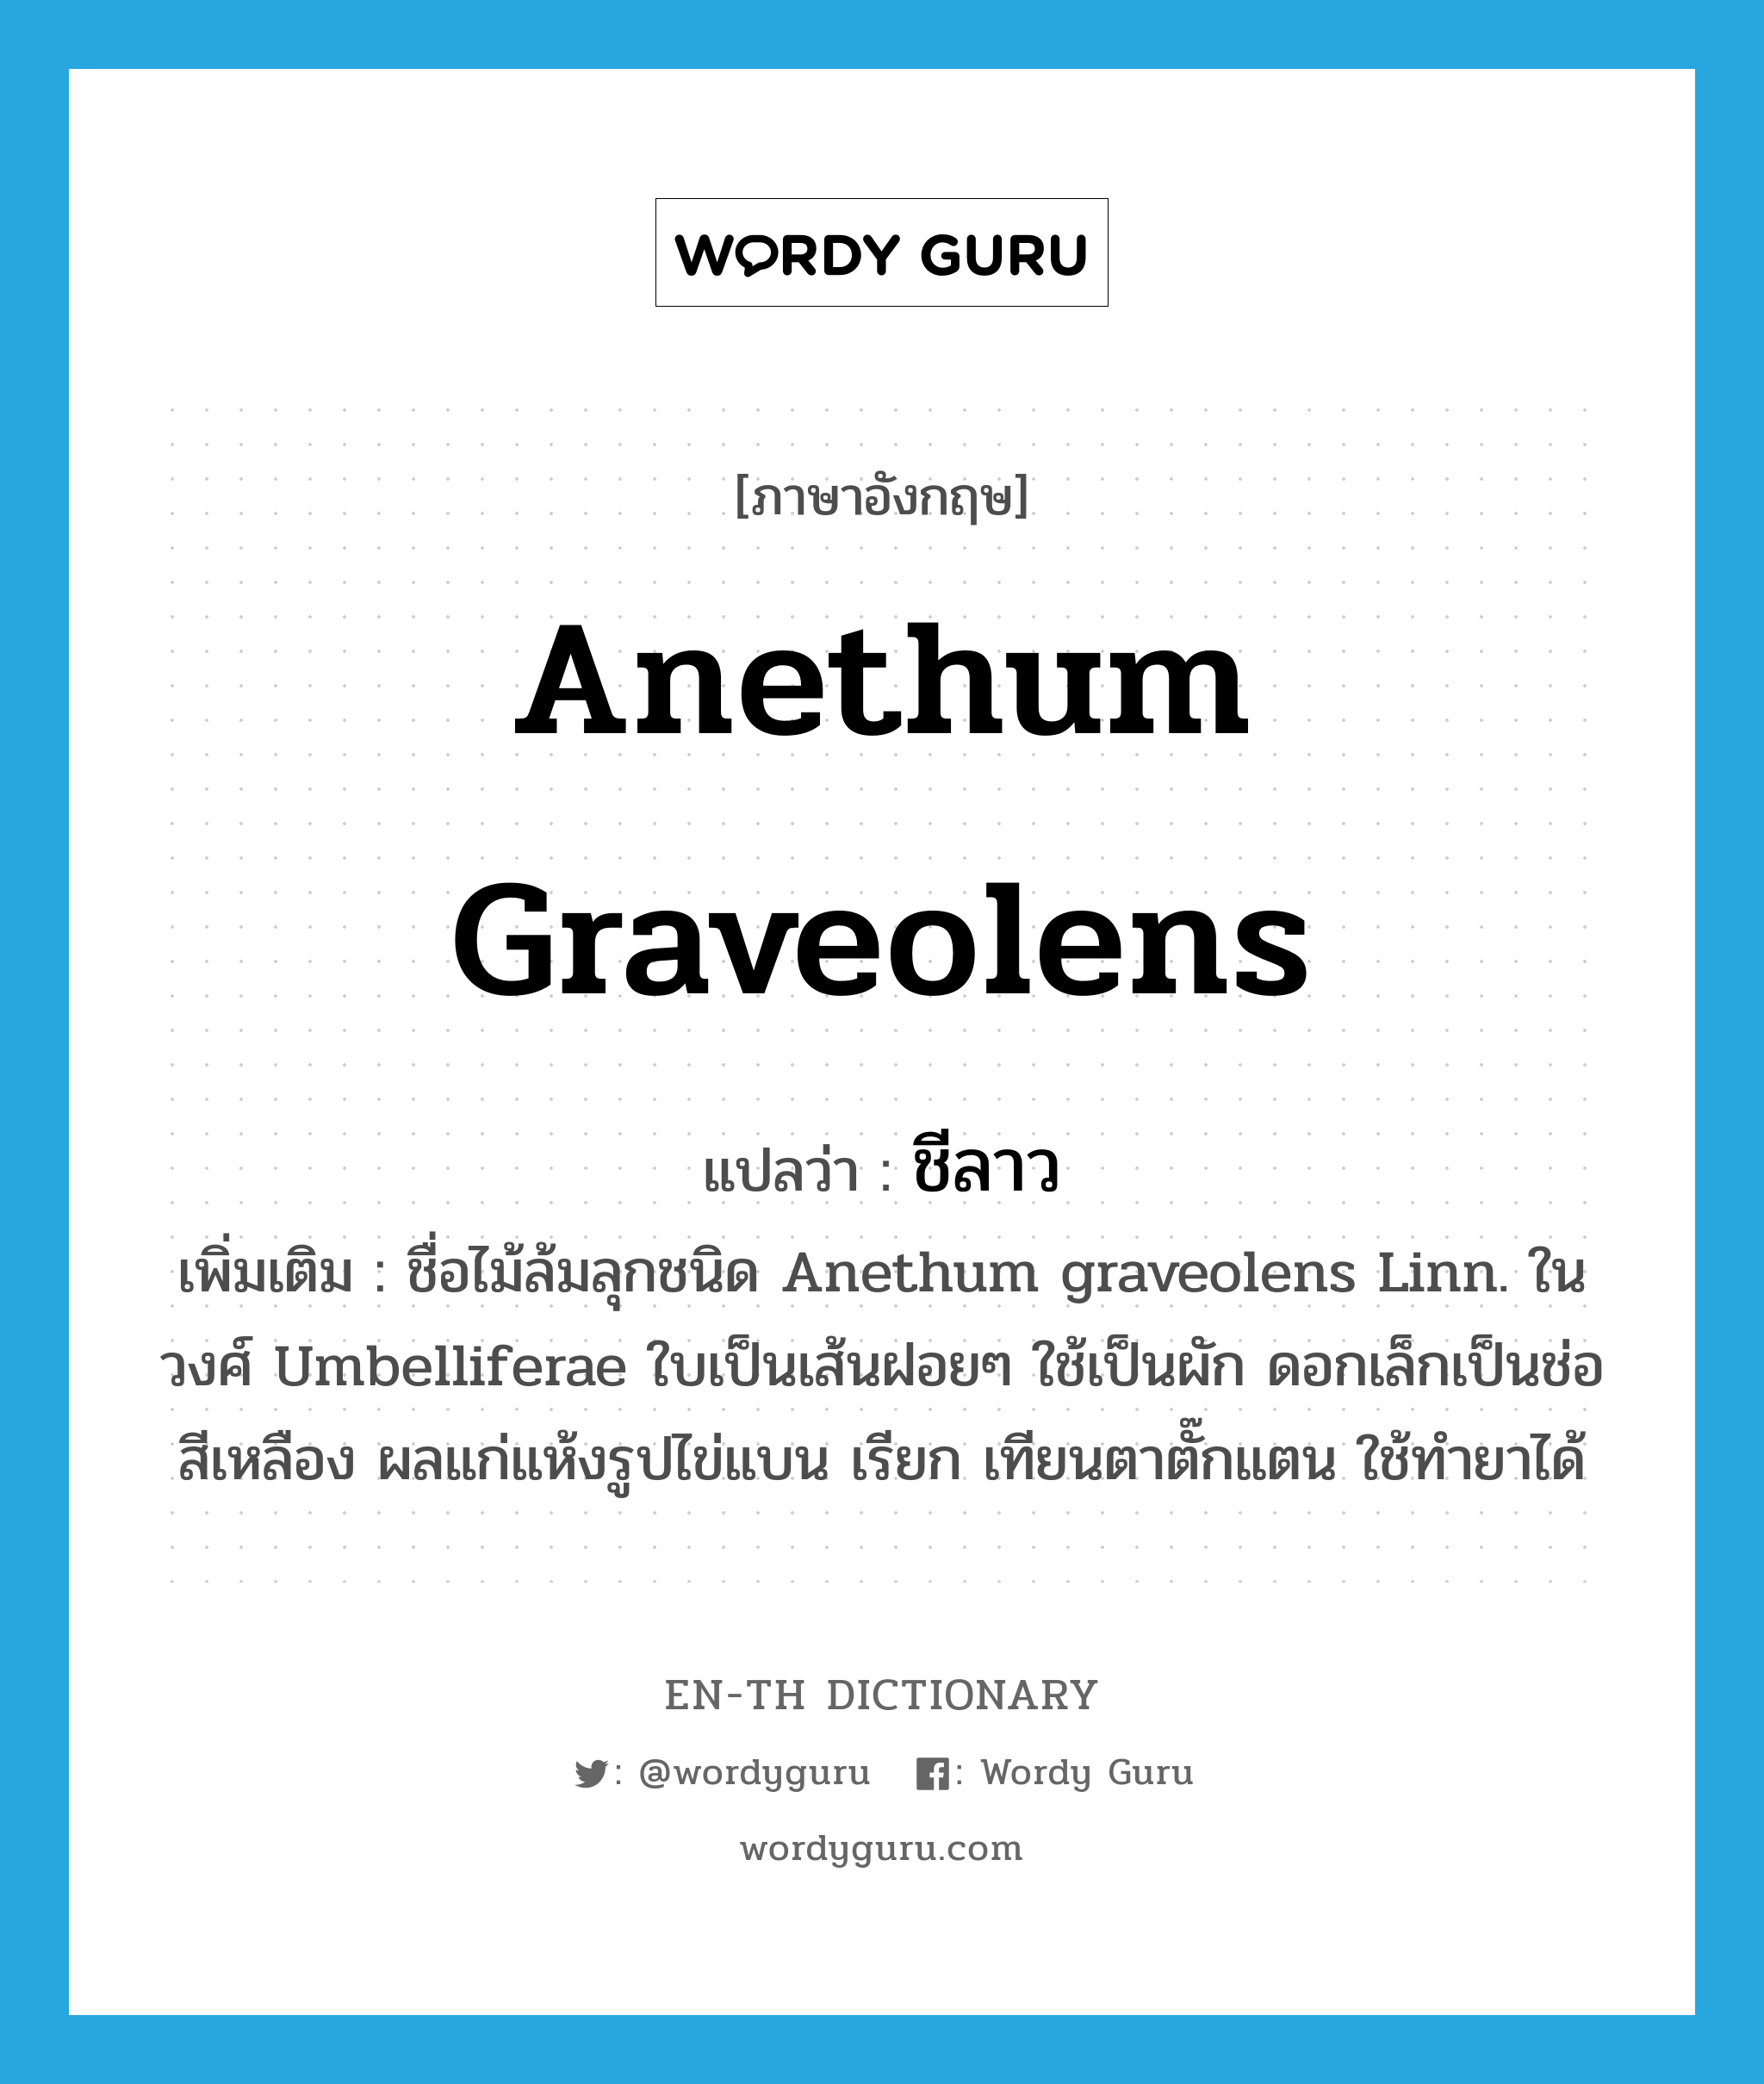 ชีลาว ภาษาอังกฤษ?, คำศัพท์ภาษาอังกฤษ ชีลาว แปลว่า Anethum graveolens ประเภท N เพิ่มเติม ชื่อไม้ล้มลุกชนิด Anethum graveolens Linn. ในวงศ์ Umbelliferae ใบเป็นเส้นฝอยๆ ใช้เป็นผัก ดอกเล็กเป็นช่อสีเหลือง ผลแก่แห้งรูปไข่แบน เรียก เทียนตาตั๊กแตน ใช้ทำยาได้ หมวด N